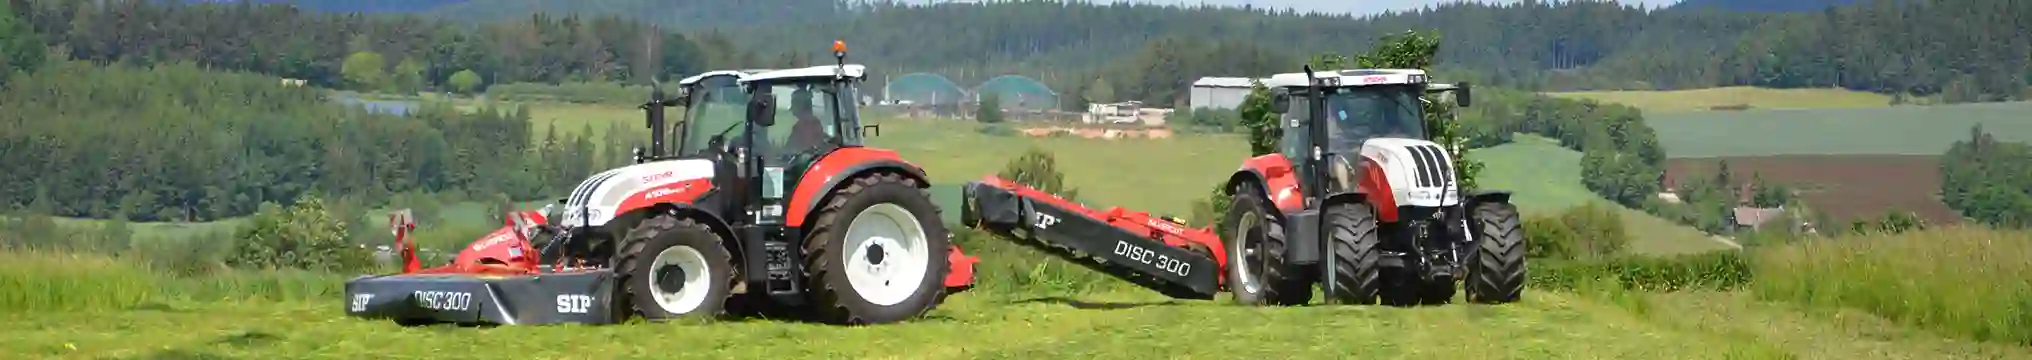 Bild von zwei STEYR Traktoren auf einem Feld